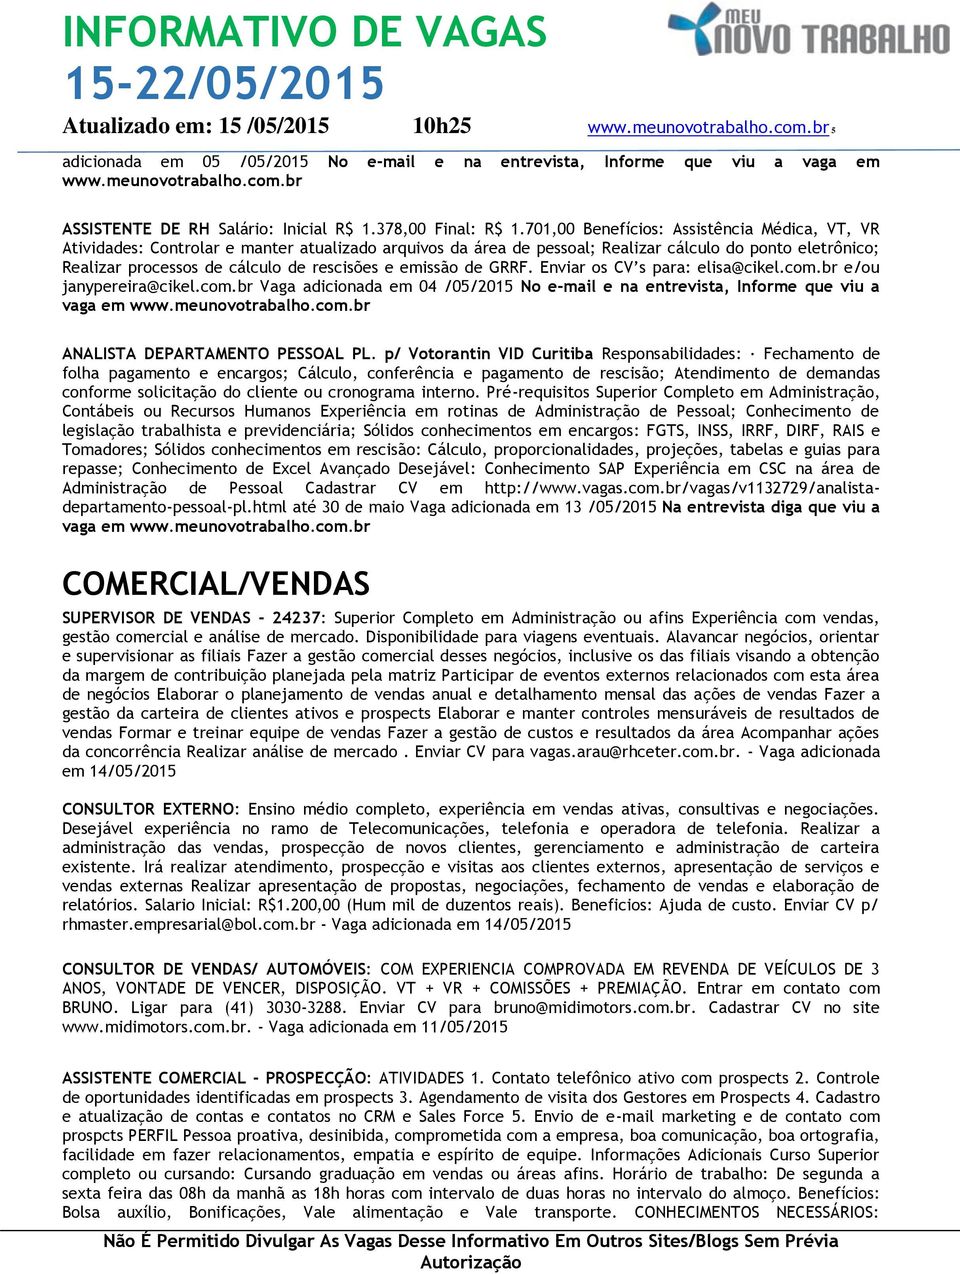 emissão de GRRF. Enviar os CV s para: elisa@cikel.com.br e/ou janypereira@cikel.com.br Vaga adicionada em 04 /05/2015 No e-mail e na entrevista, Informe que viu a vaga em ANALISTA DEPARTAMENTO PESSOAL PL.